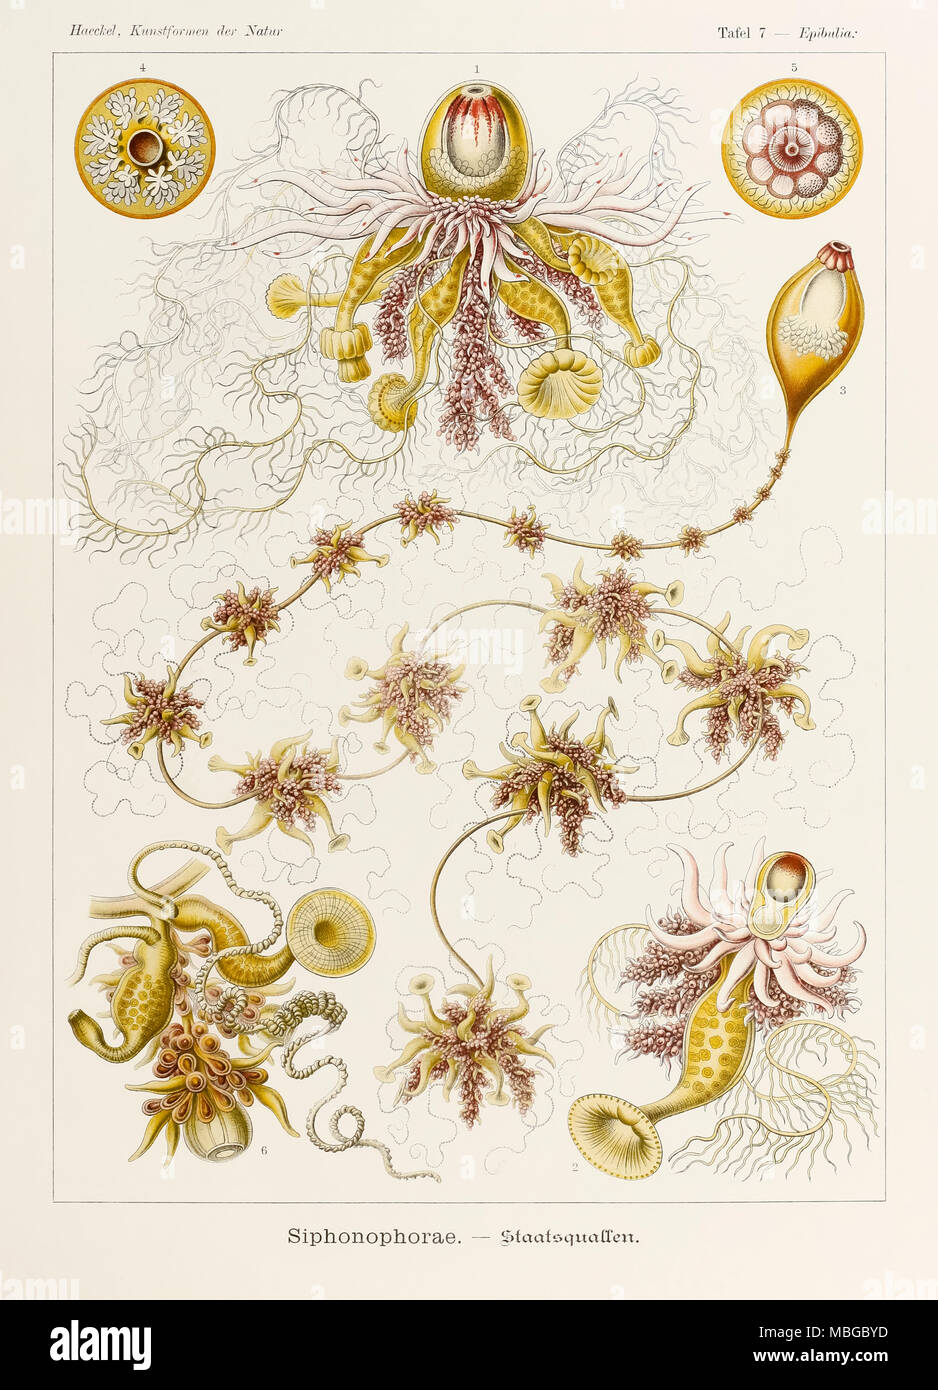 7 Epibulia Siphonophorae plaque de 'Kunstformen der Natur' (formes d'art dans la Nature) illustrée par Ernst Haeckel (1834-1919). Voir plus d'informations ci-dessous. Banque D'Images